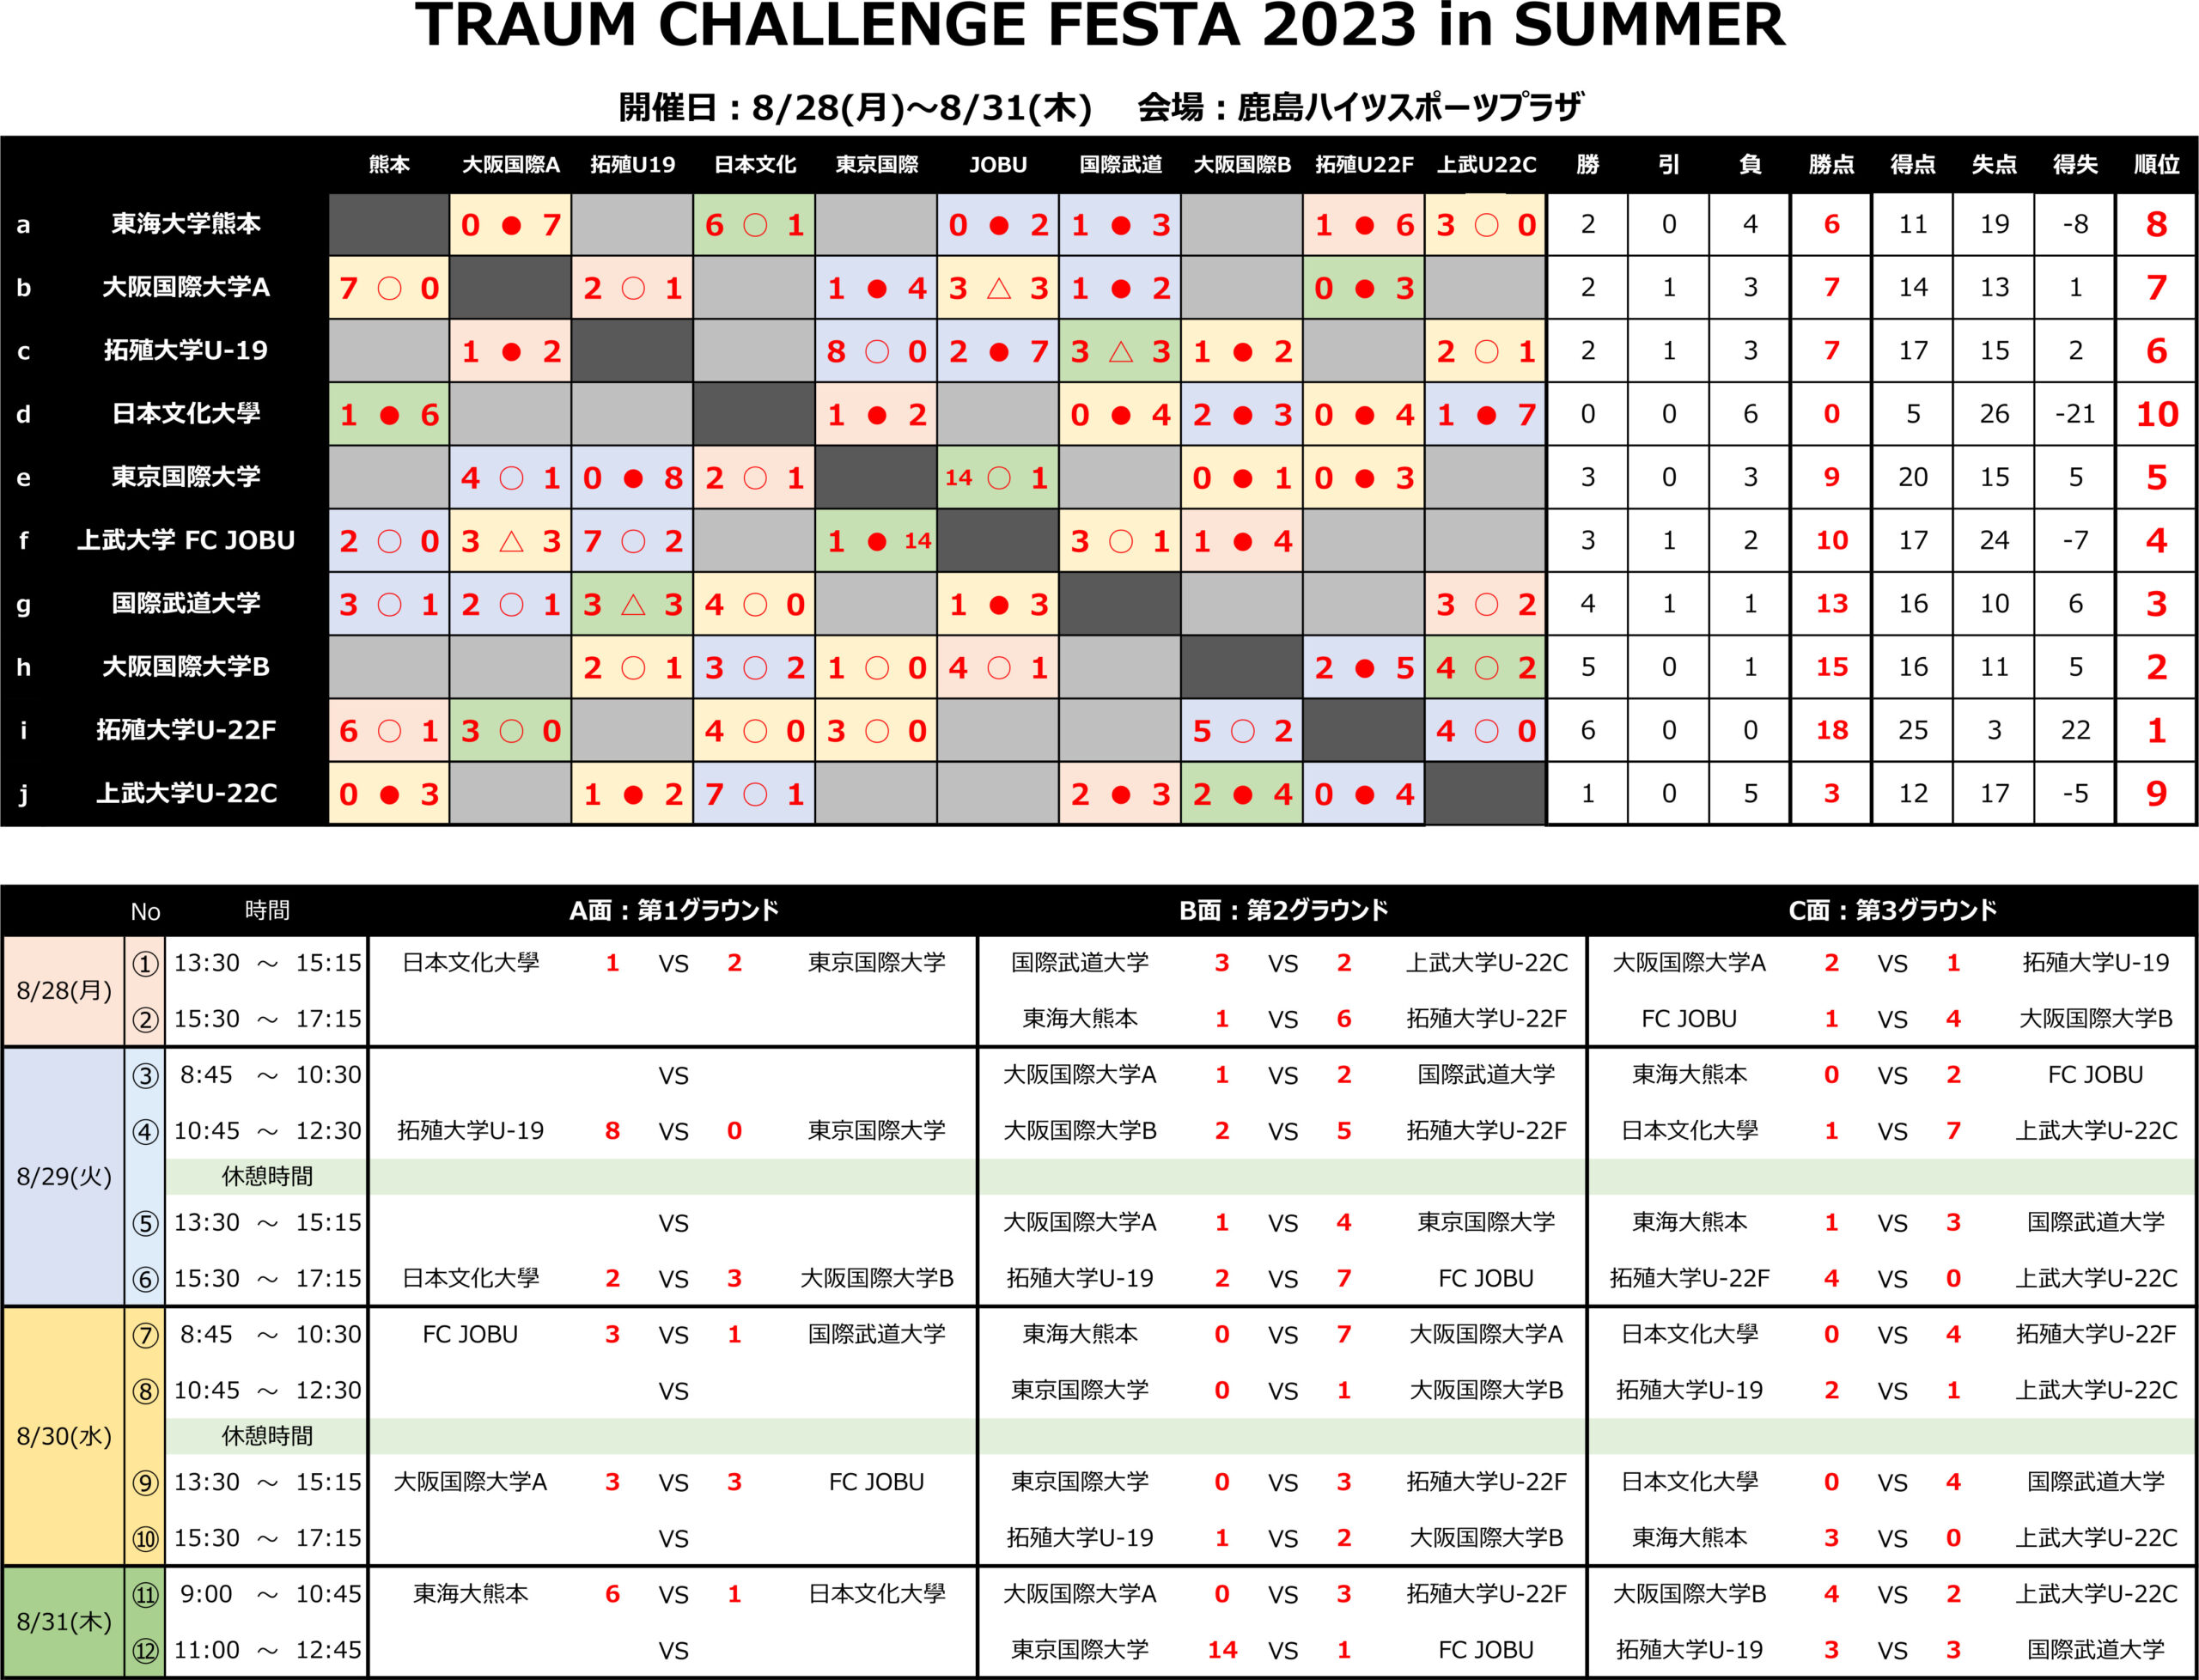 2023/8/28(月)〜31(木)　TRAUM CHALLENGE FESTA 2023 in SUMMER トーナメント表